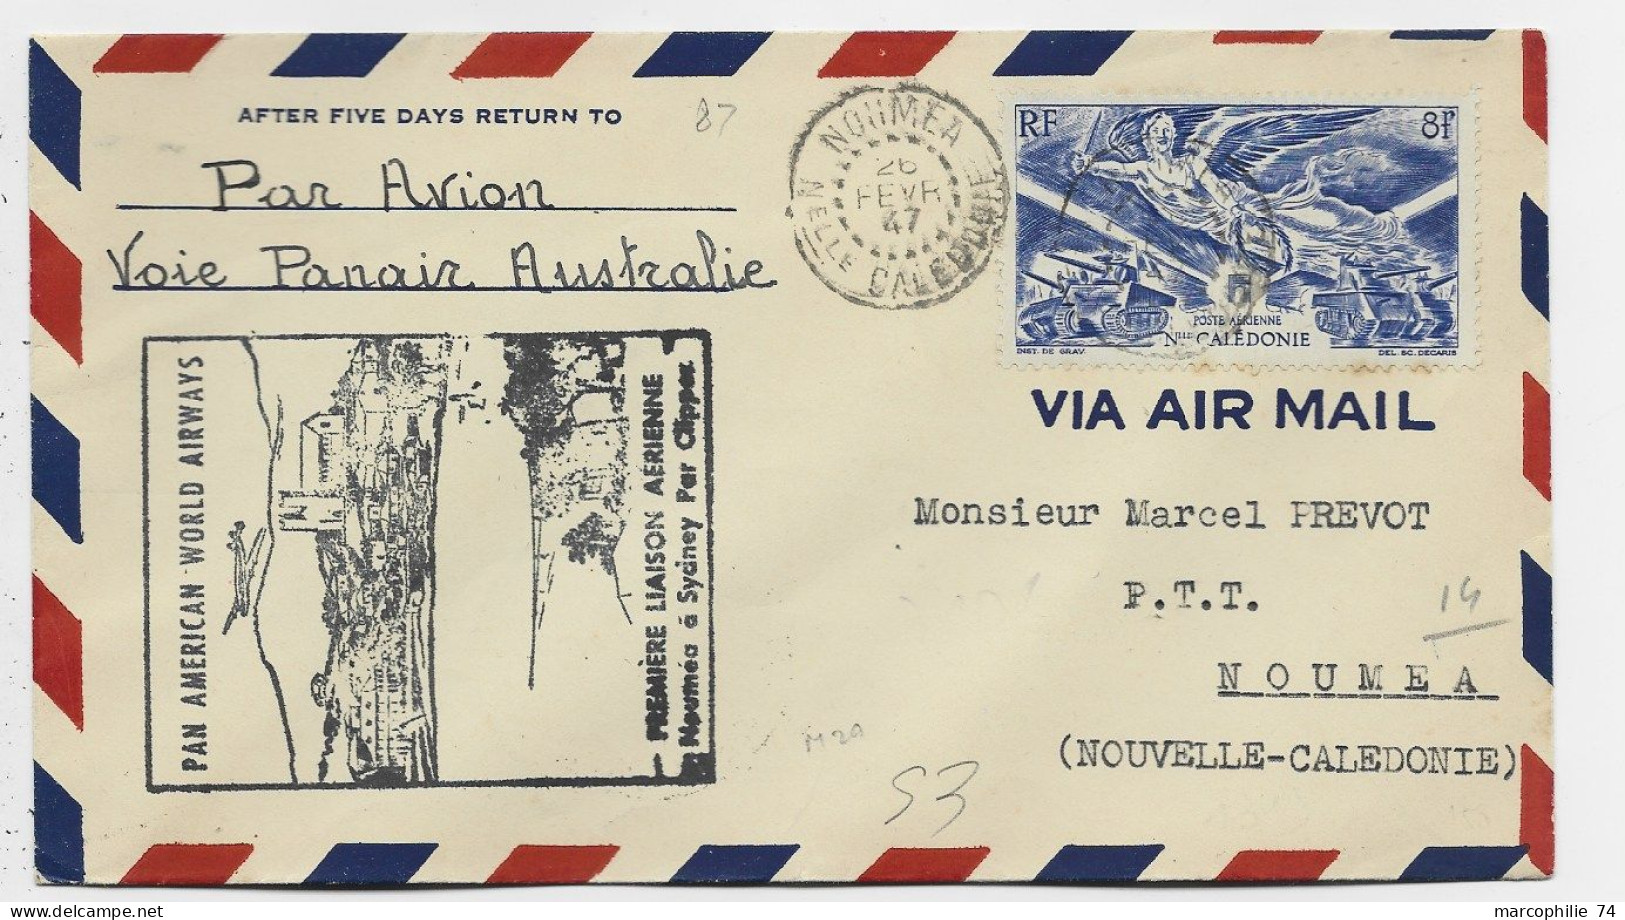 NOUVELLE CALEDONIE PA 8FR SEUL LETTRE COVER AVION NOUMEA 26 FEVR 1947 VOIS PANAIE AUSTRALIE PREMIERE LIAISON AERIENNE - Covers & Documents